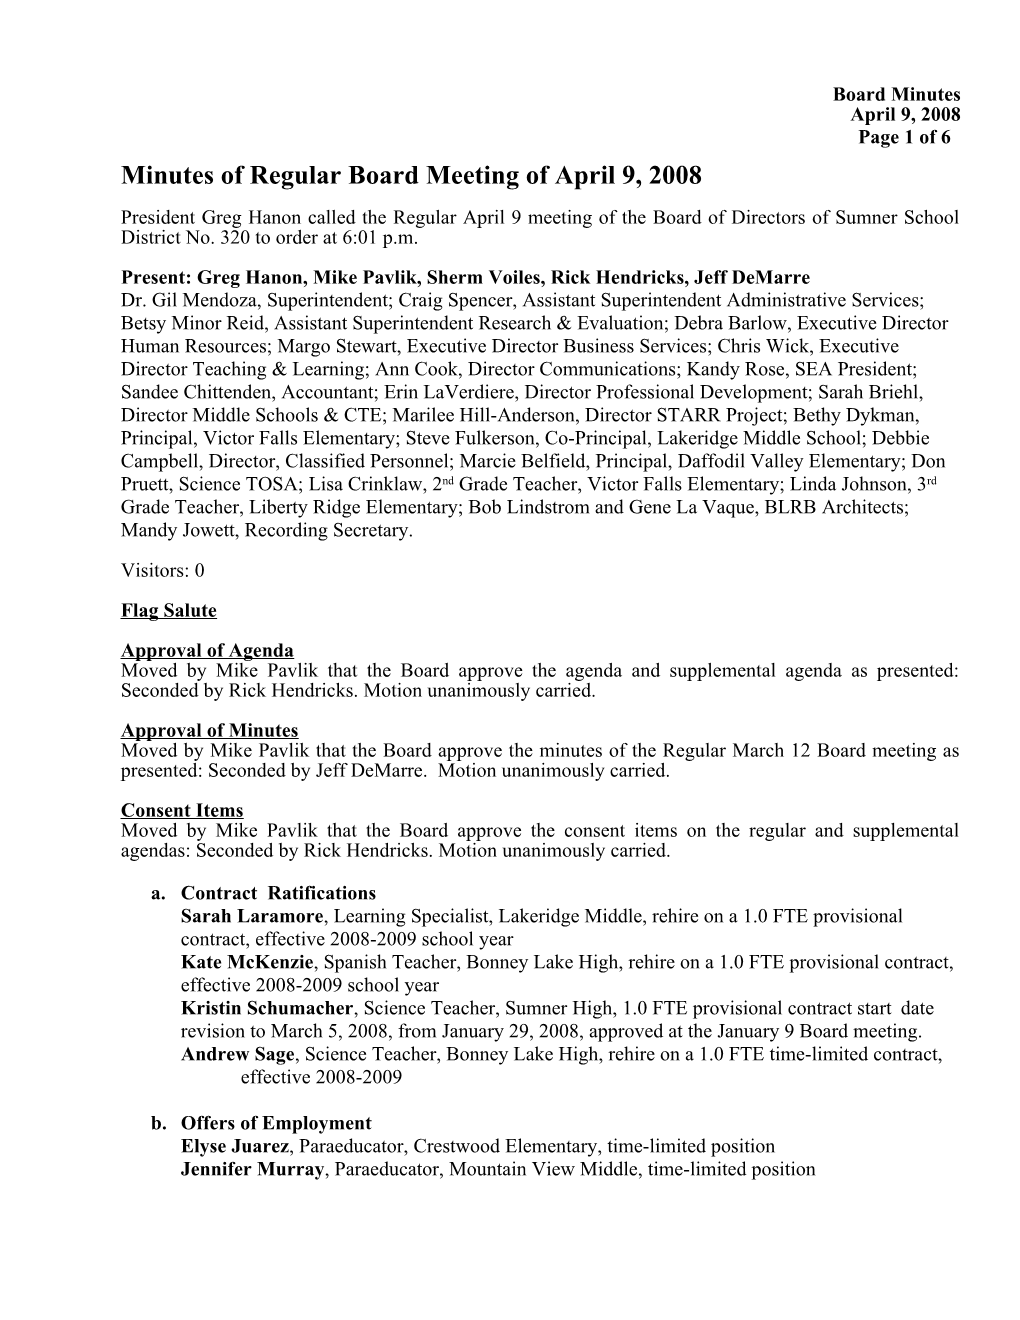 Minutes of Regular Board Meeting of April 9, 2008